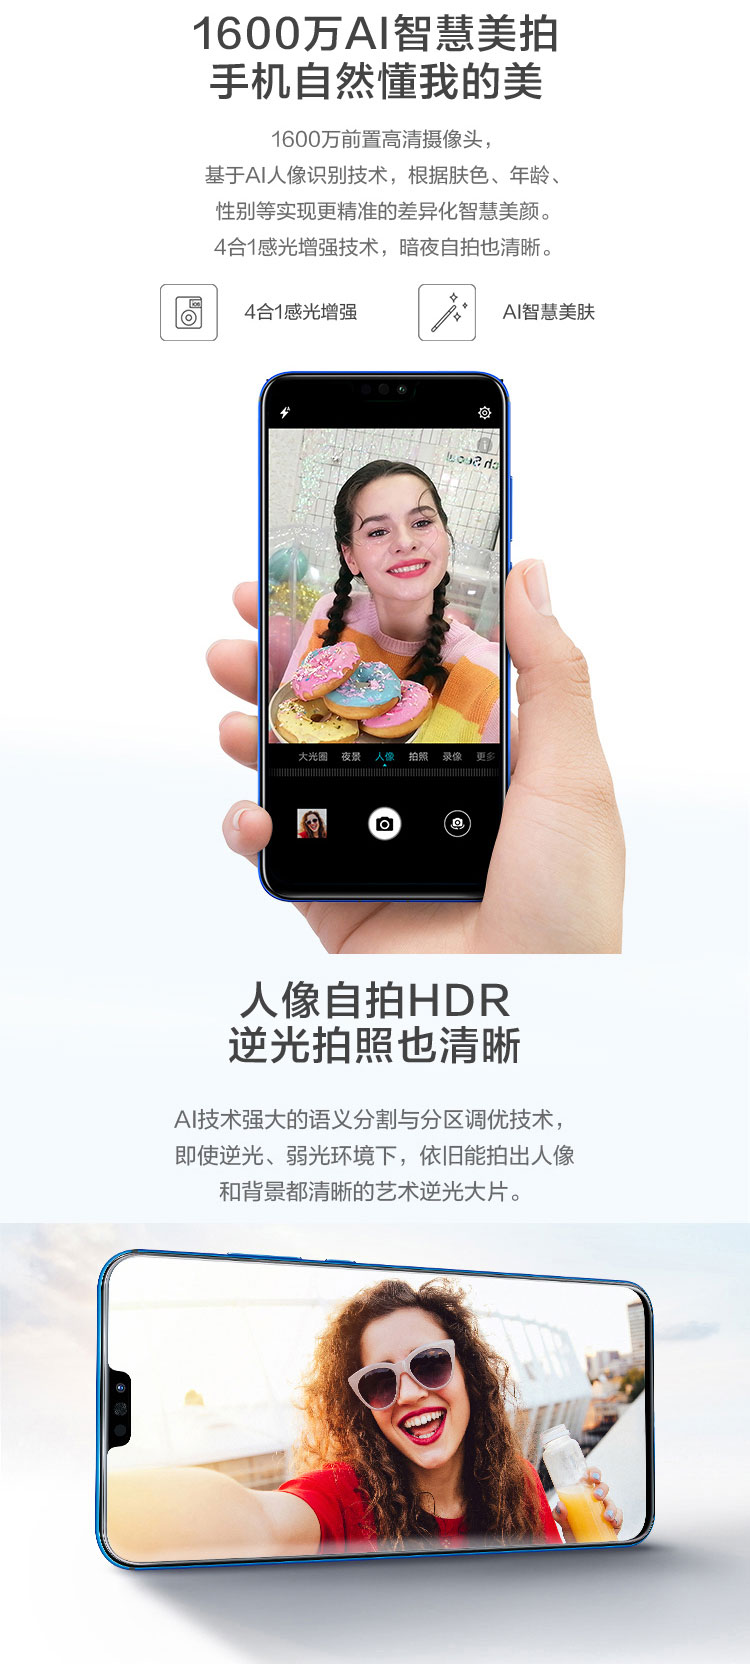 中山手机网 华为(huawei) 荣耀8x手机专卖